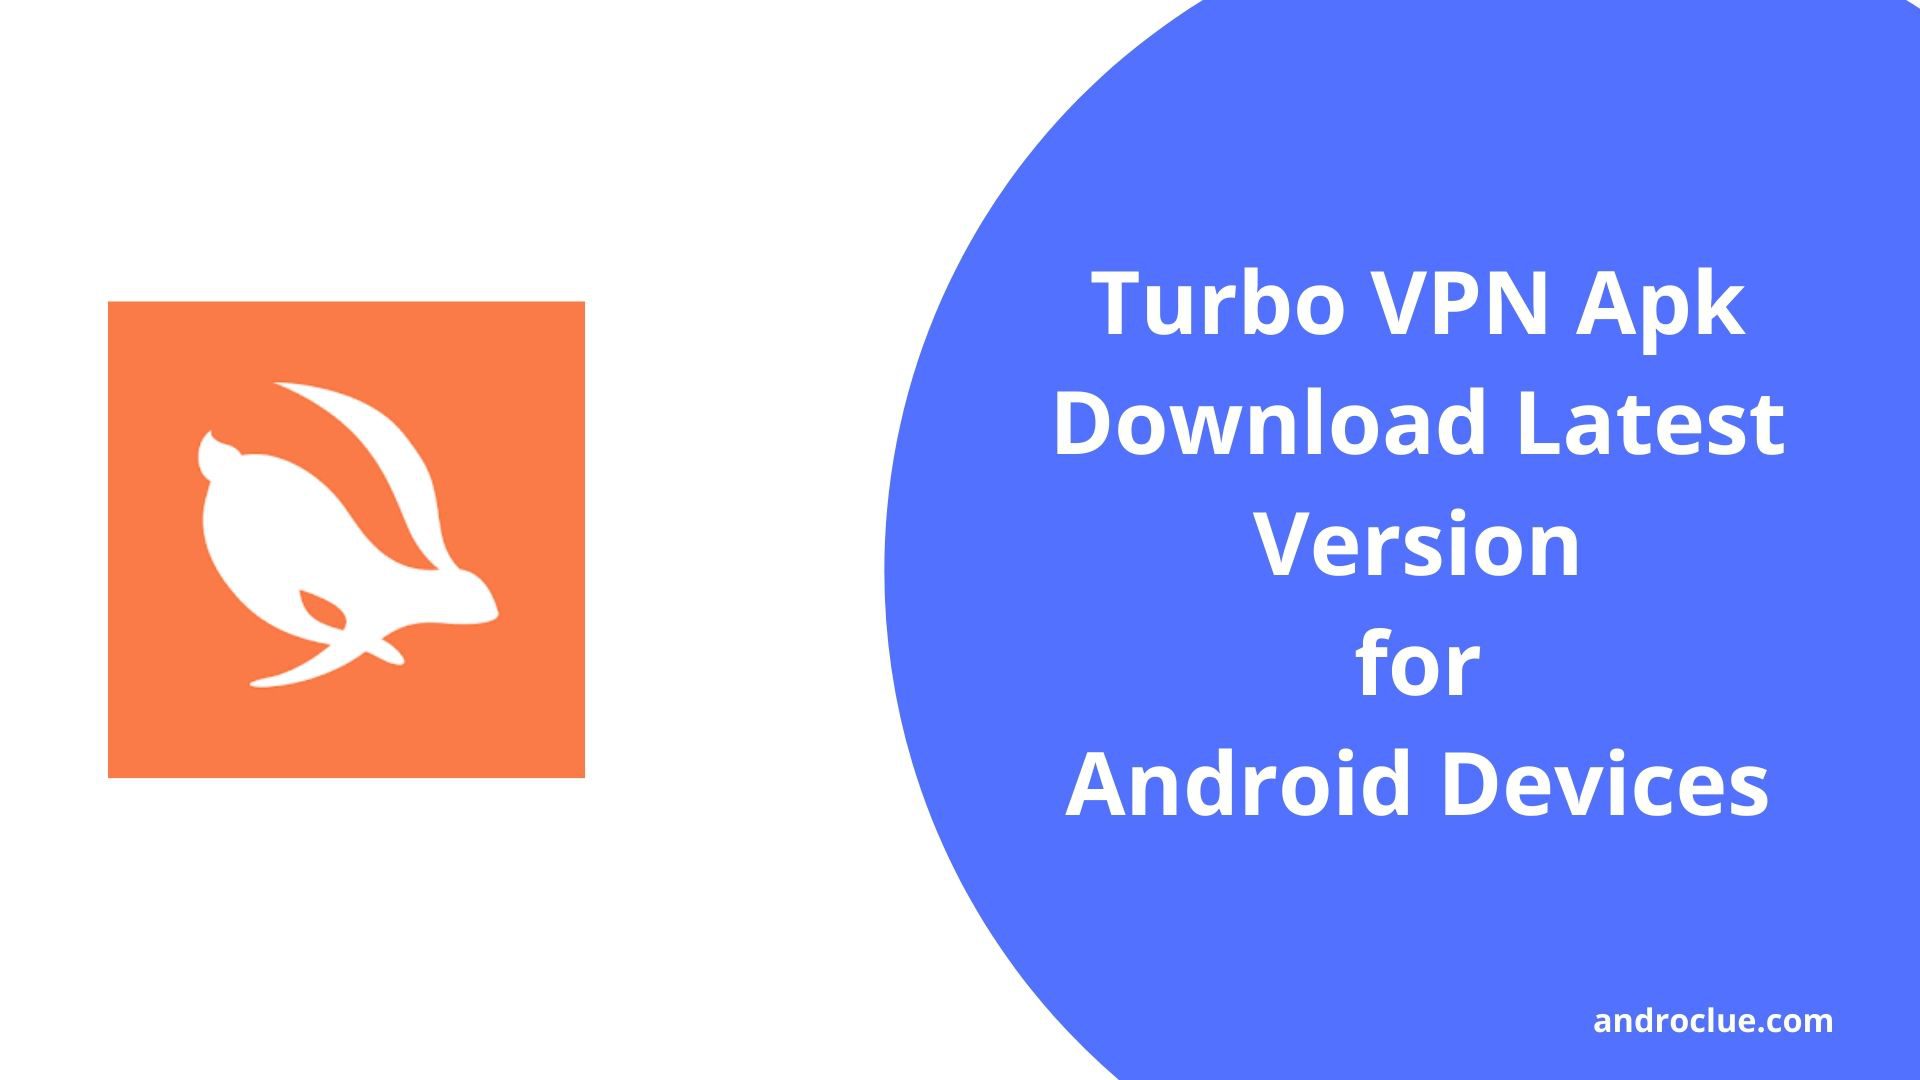 Turbo VPN Apk for Android - Versão mais recente Download Link & Revisão